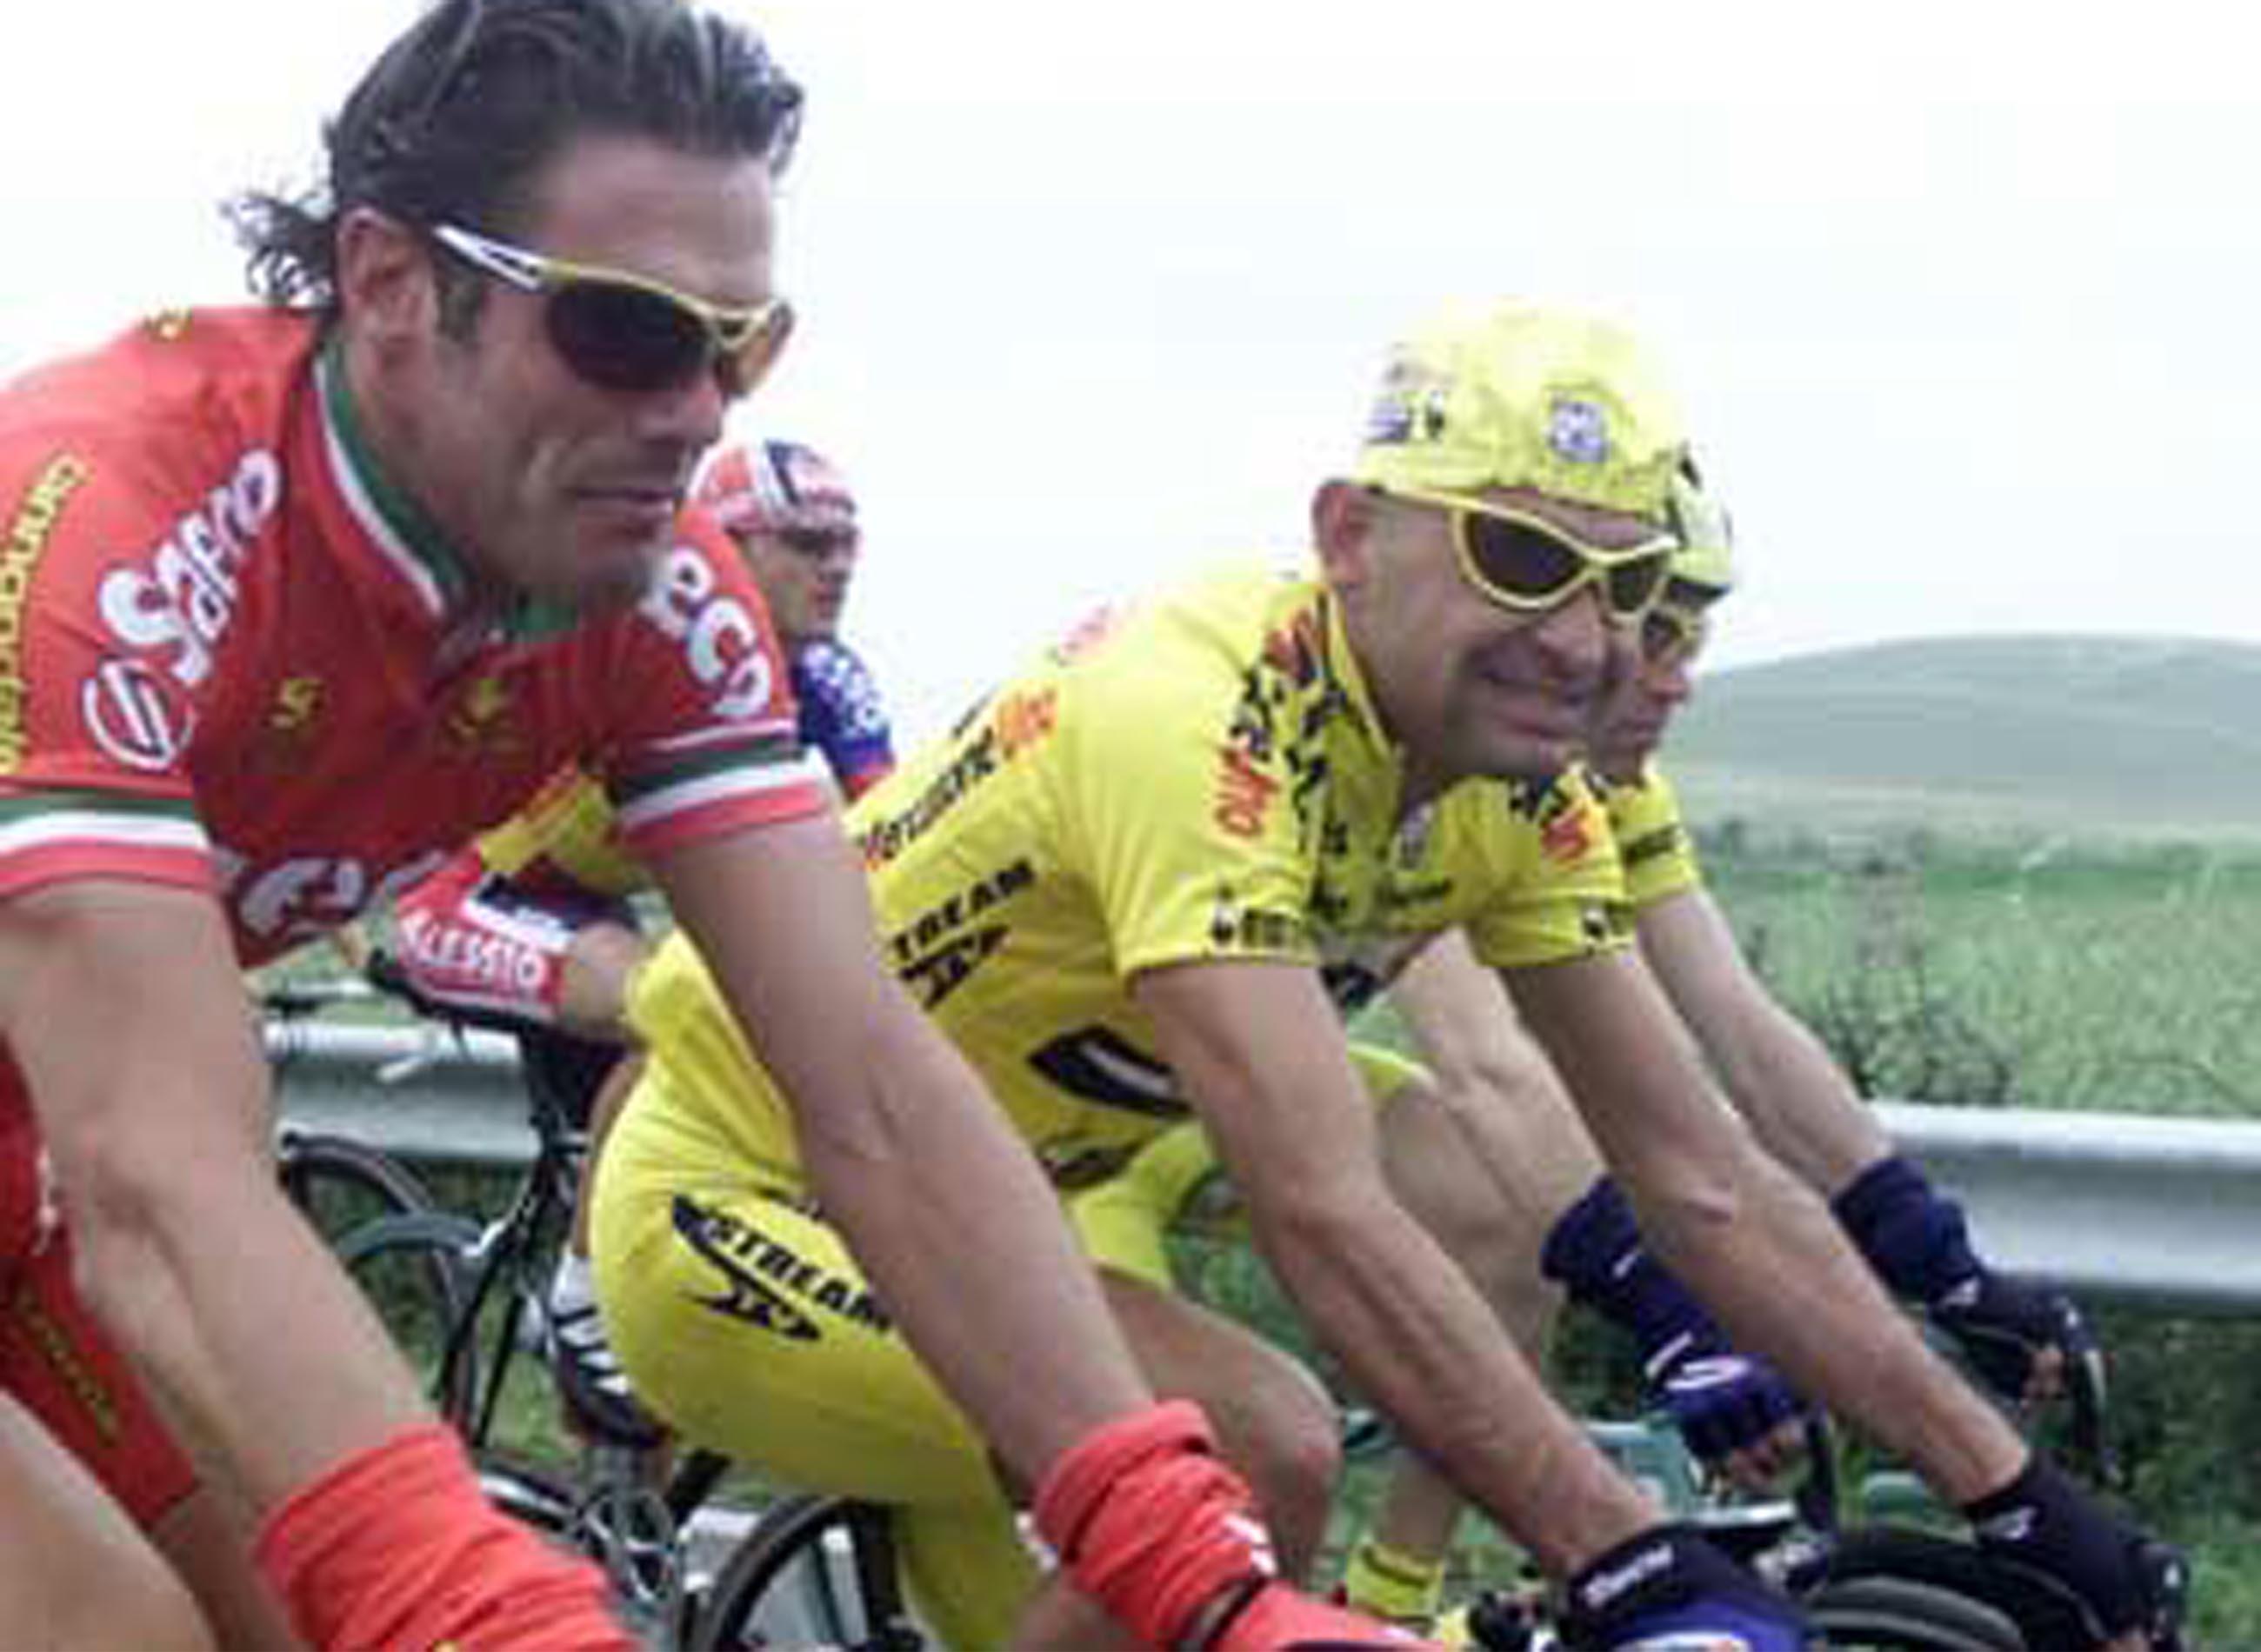 Lucera, maggio 2001 - Giro d'Italia: terza tappa, il 'Pirata' al fianco di Mario Cipollini (INFOPHOTO)